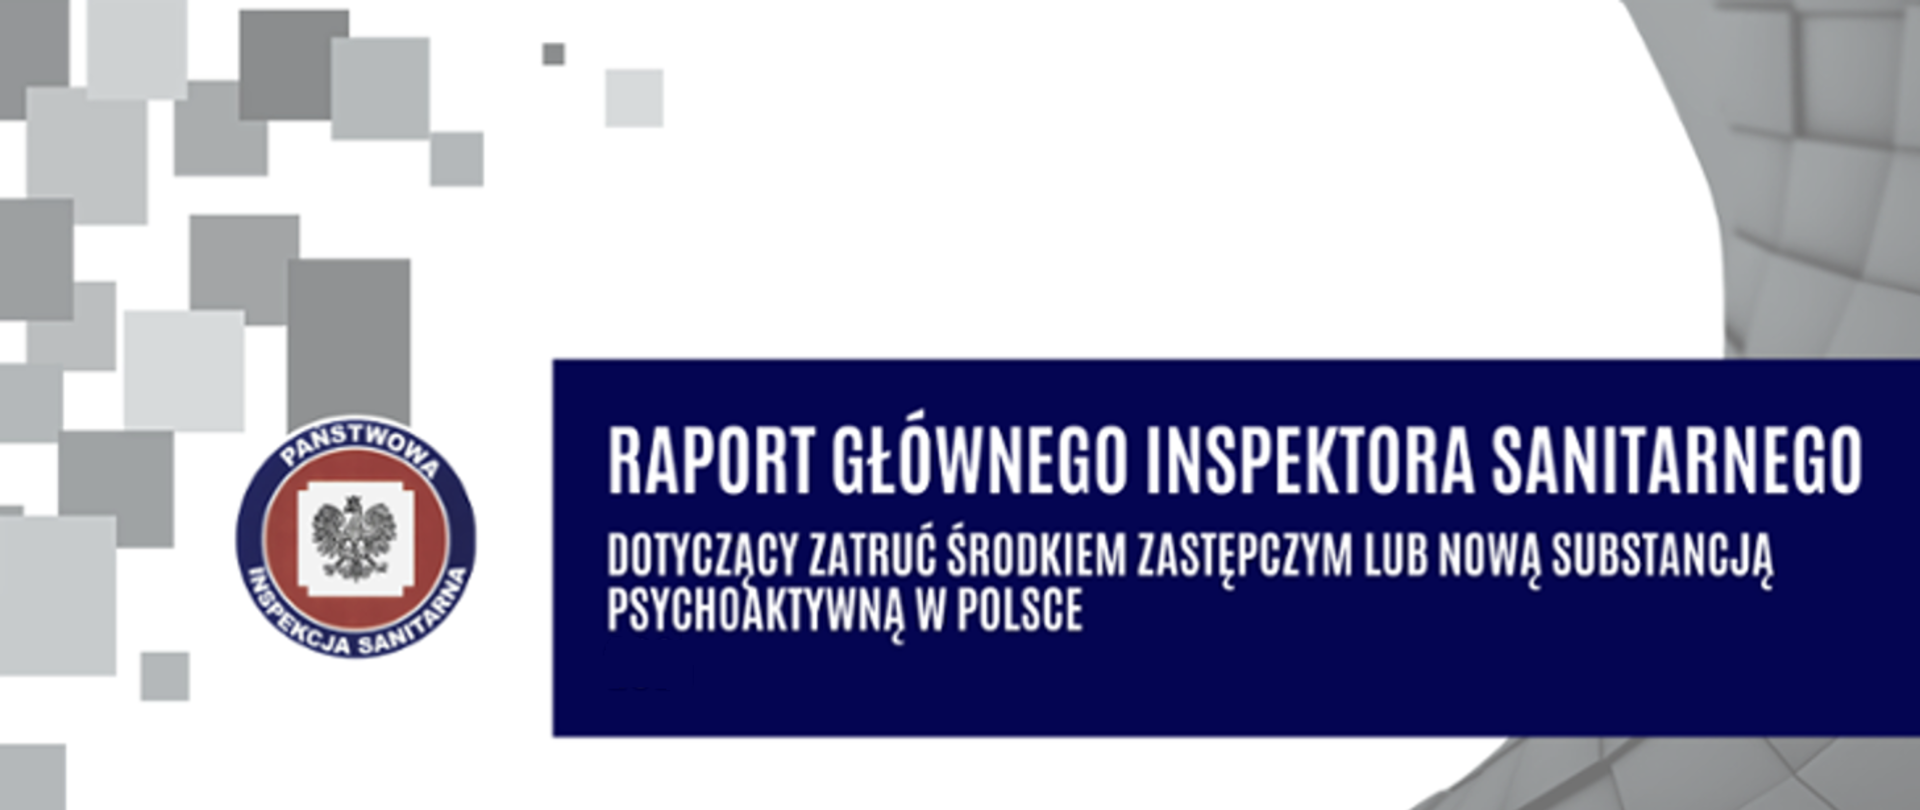 Raport Głównego Inspektora Sanitarnego dotyczący zatruć środkiem zastępczym lub nową substancją psychoaktywną w Polsce